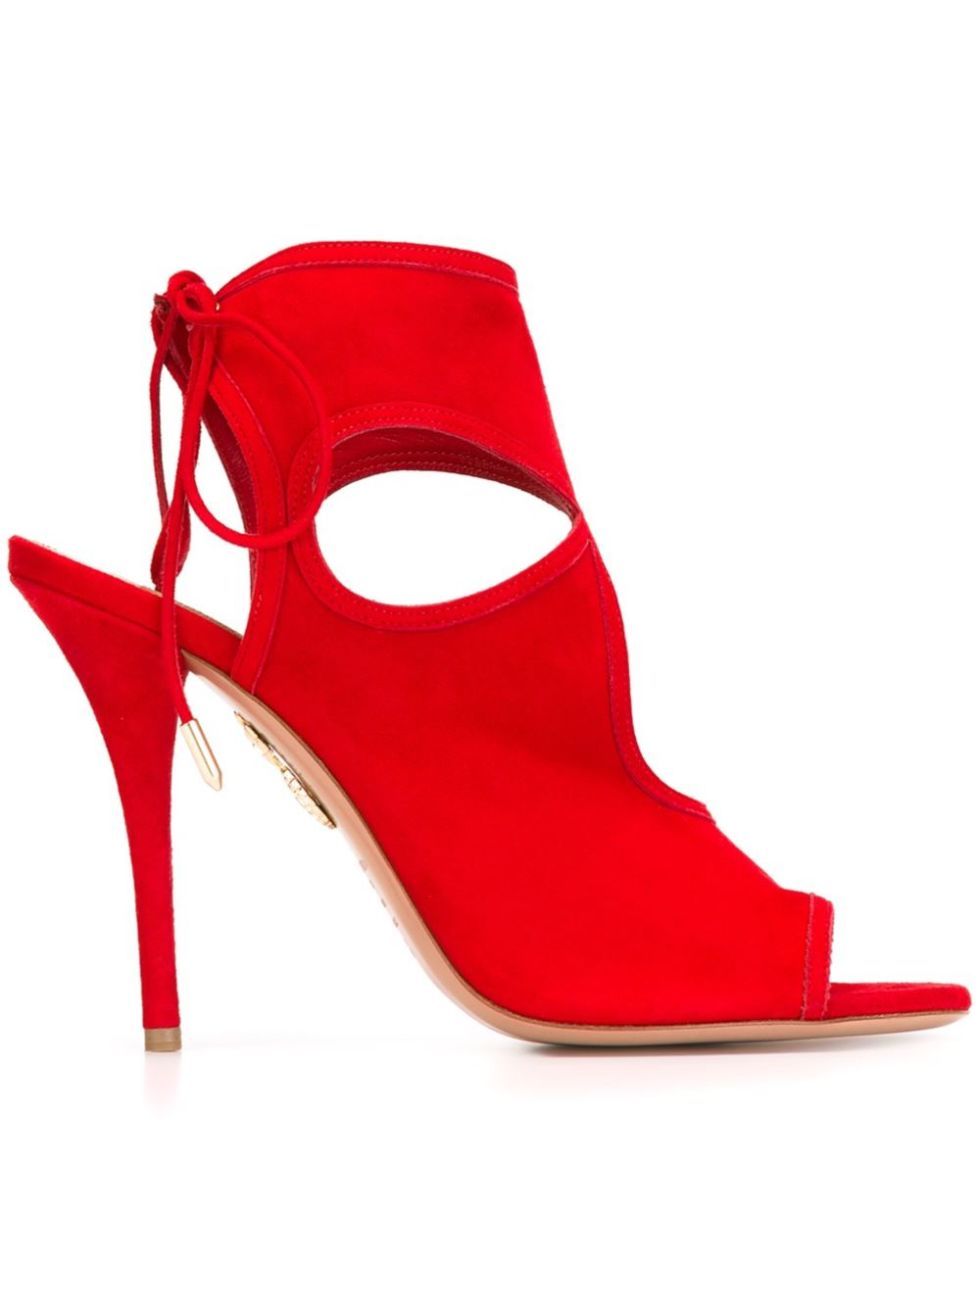 Footwear, Red, High heels, Carmine, Sandal, Maroon, Basic pump, Tan, Leather, Dancing shoe, 